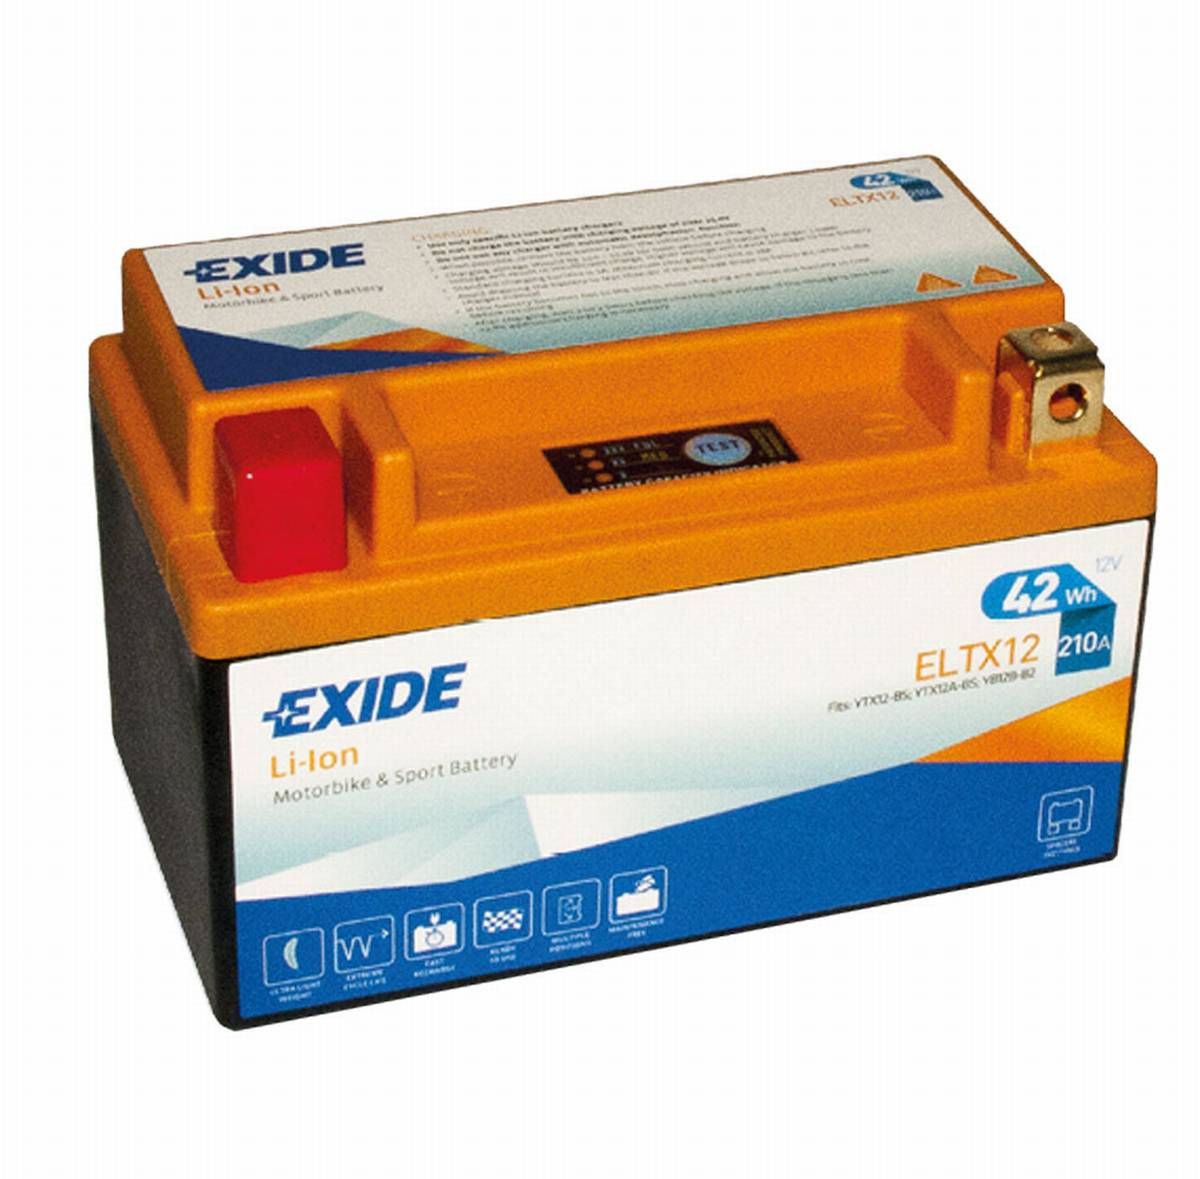 Exide ELTX12 Li-Ion Lithium Motorradbatterie 12V 3,5Ah 210A